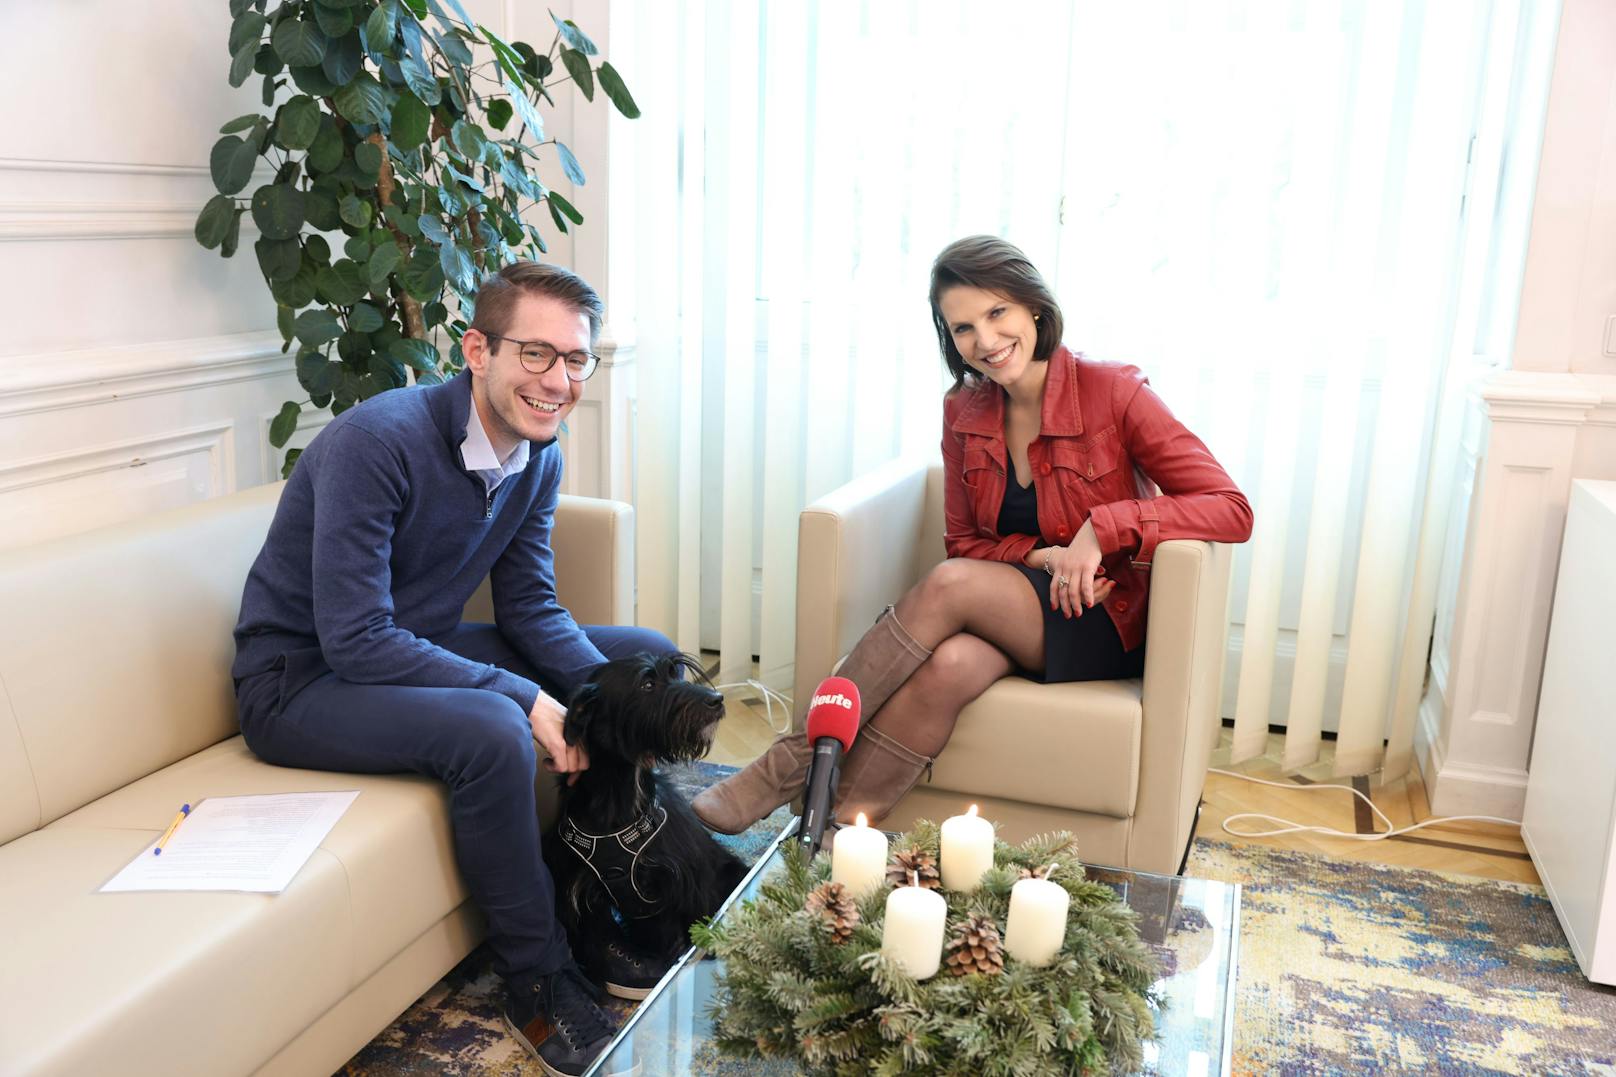 Beim "Heute"-Interview war auch Edtstadlers Hund "Struppi" dabei.